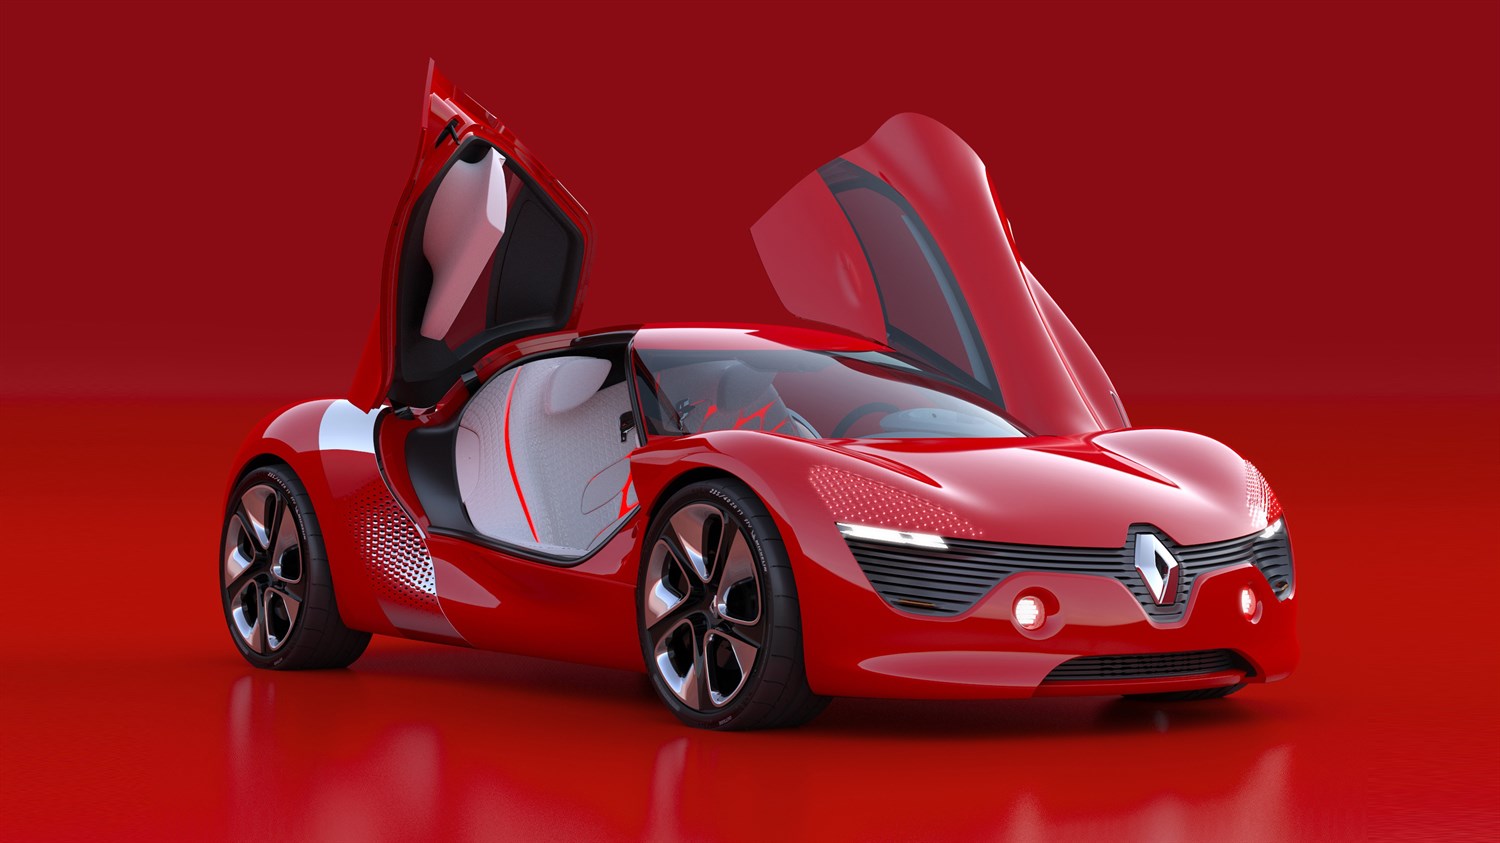 Renault DEZIR concept car front design with front doors open